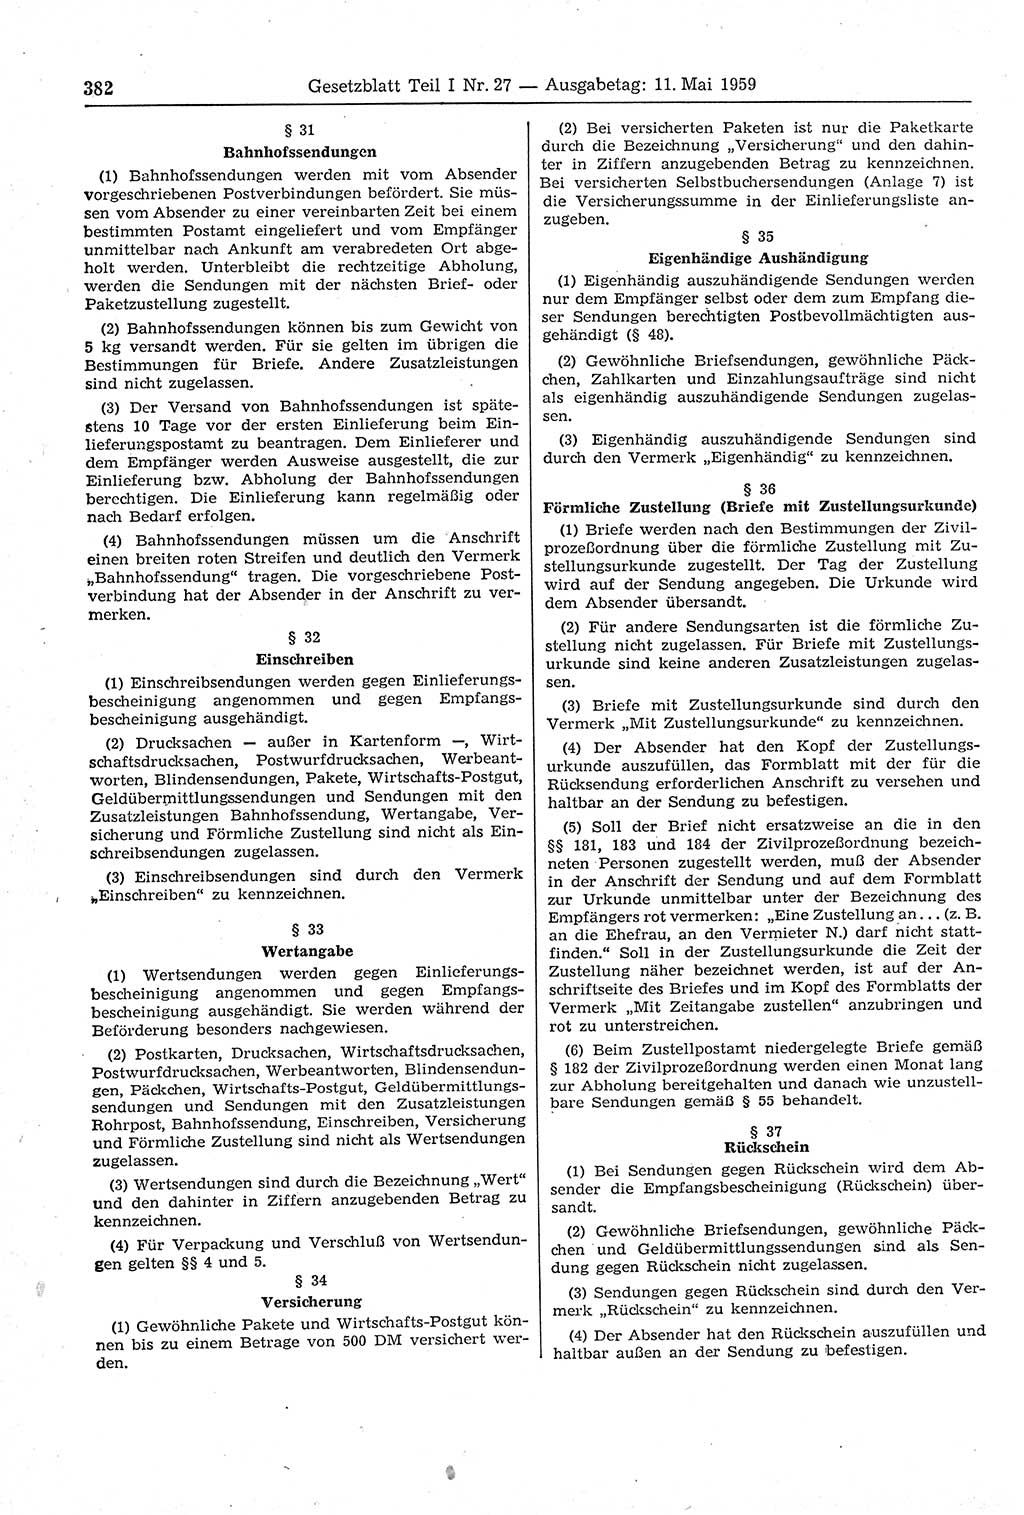 Gesetzblatt (GBl.) der Deutschen Demokratischen Republik (DDR) Teil Ⅰ 1959, Seite 382 (GBl. DDR Ⅰ 1959, S. 382)